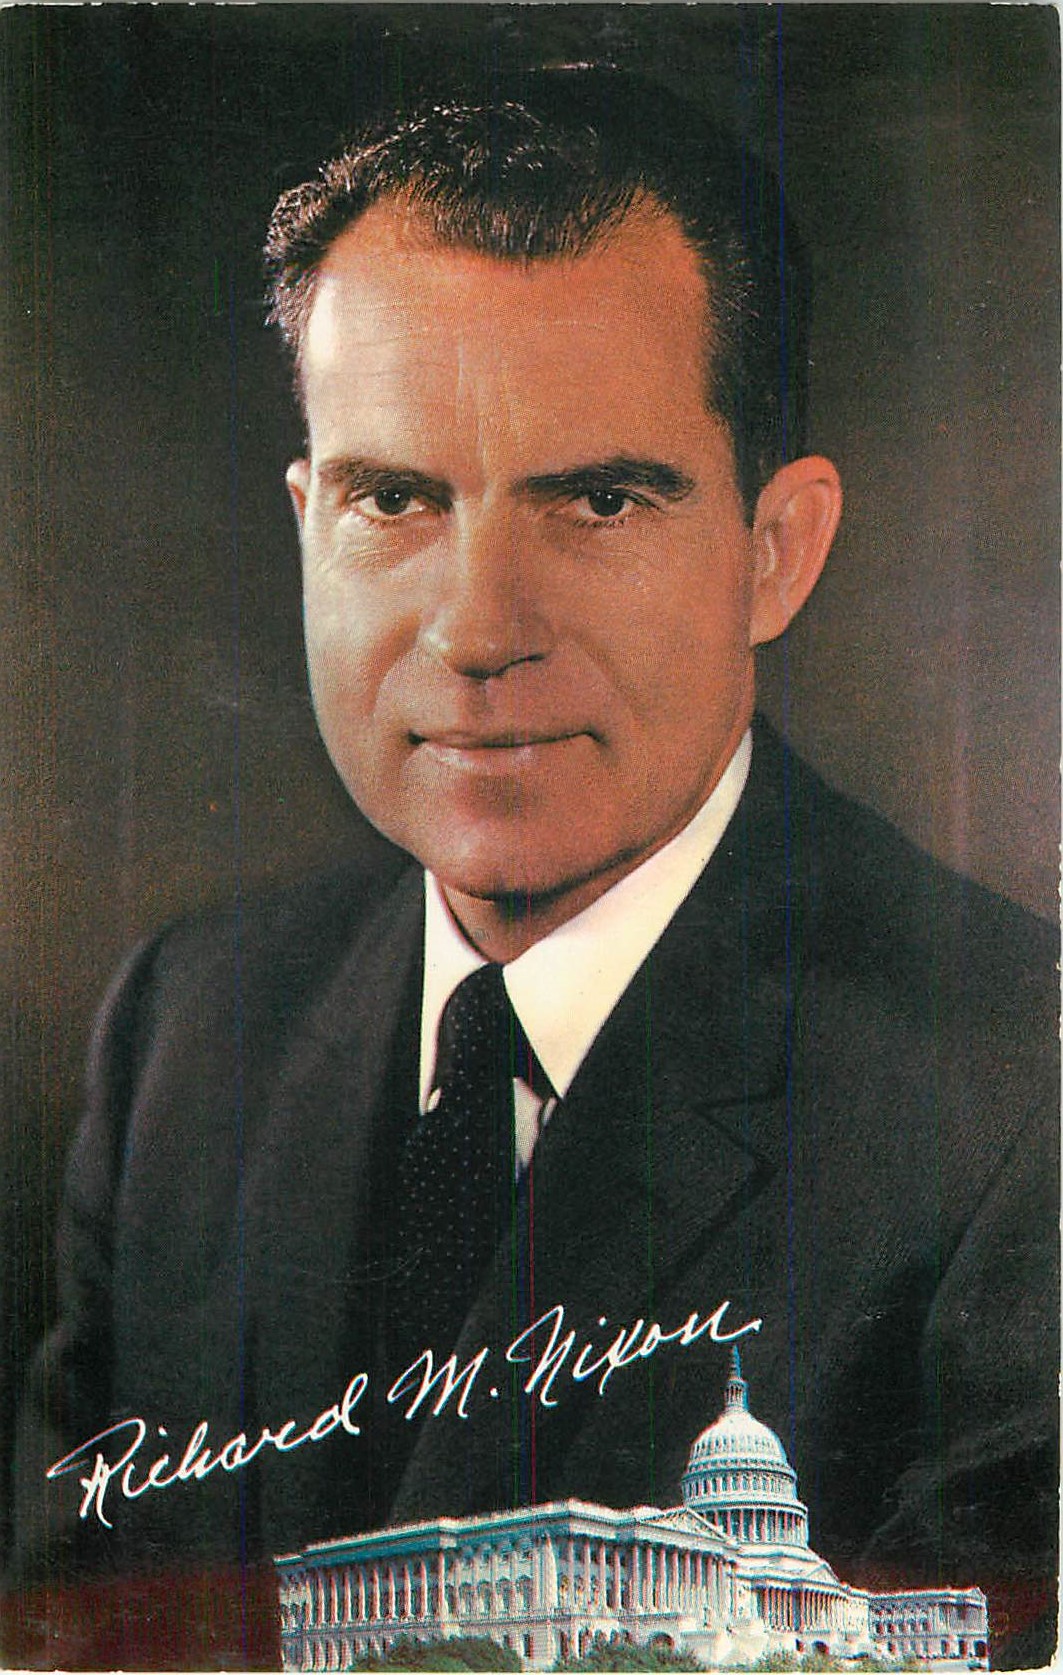 "Richard M. Nixon